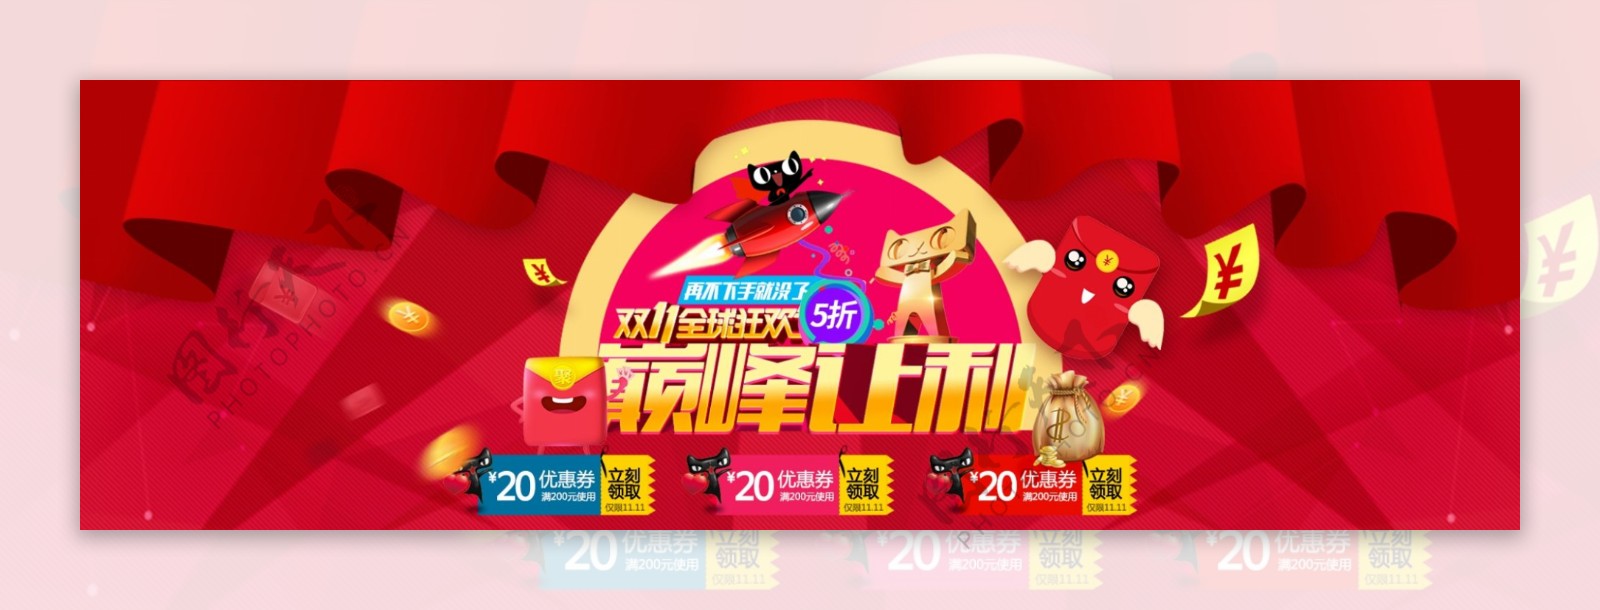 淘宝天猫双11双十一狂欢节促销海报模板